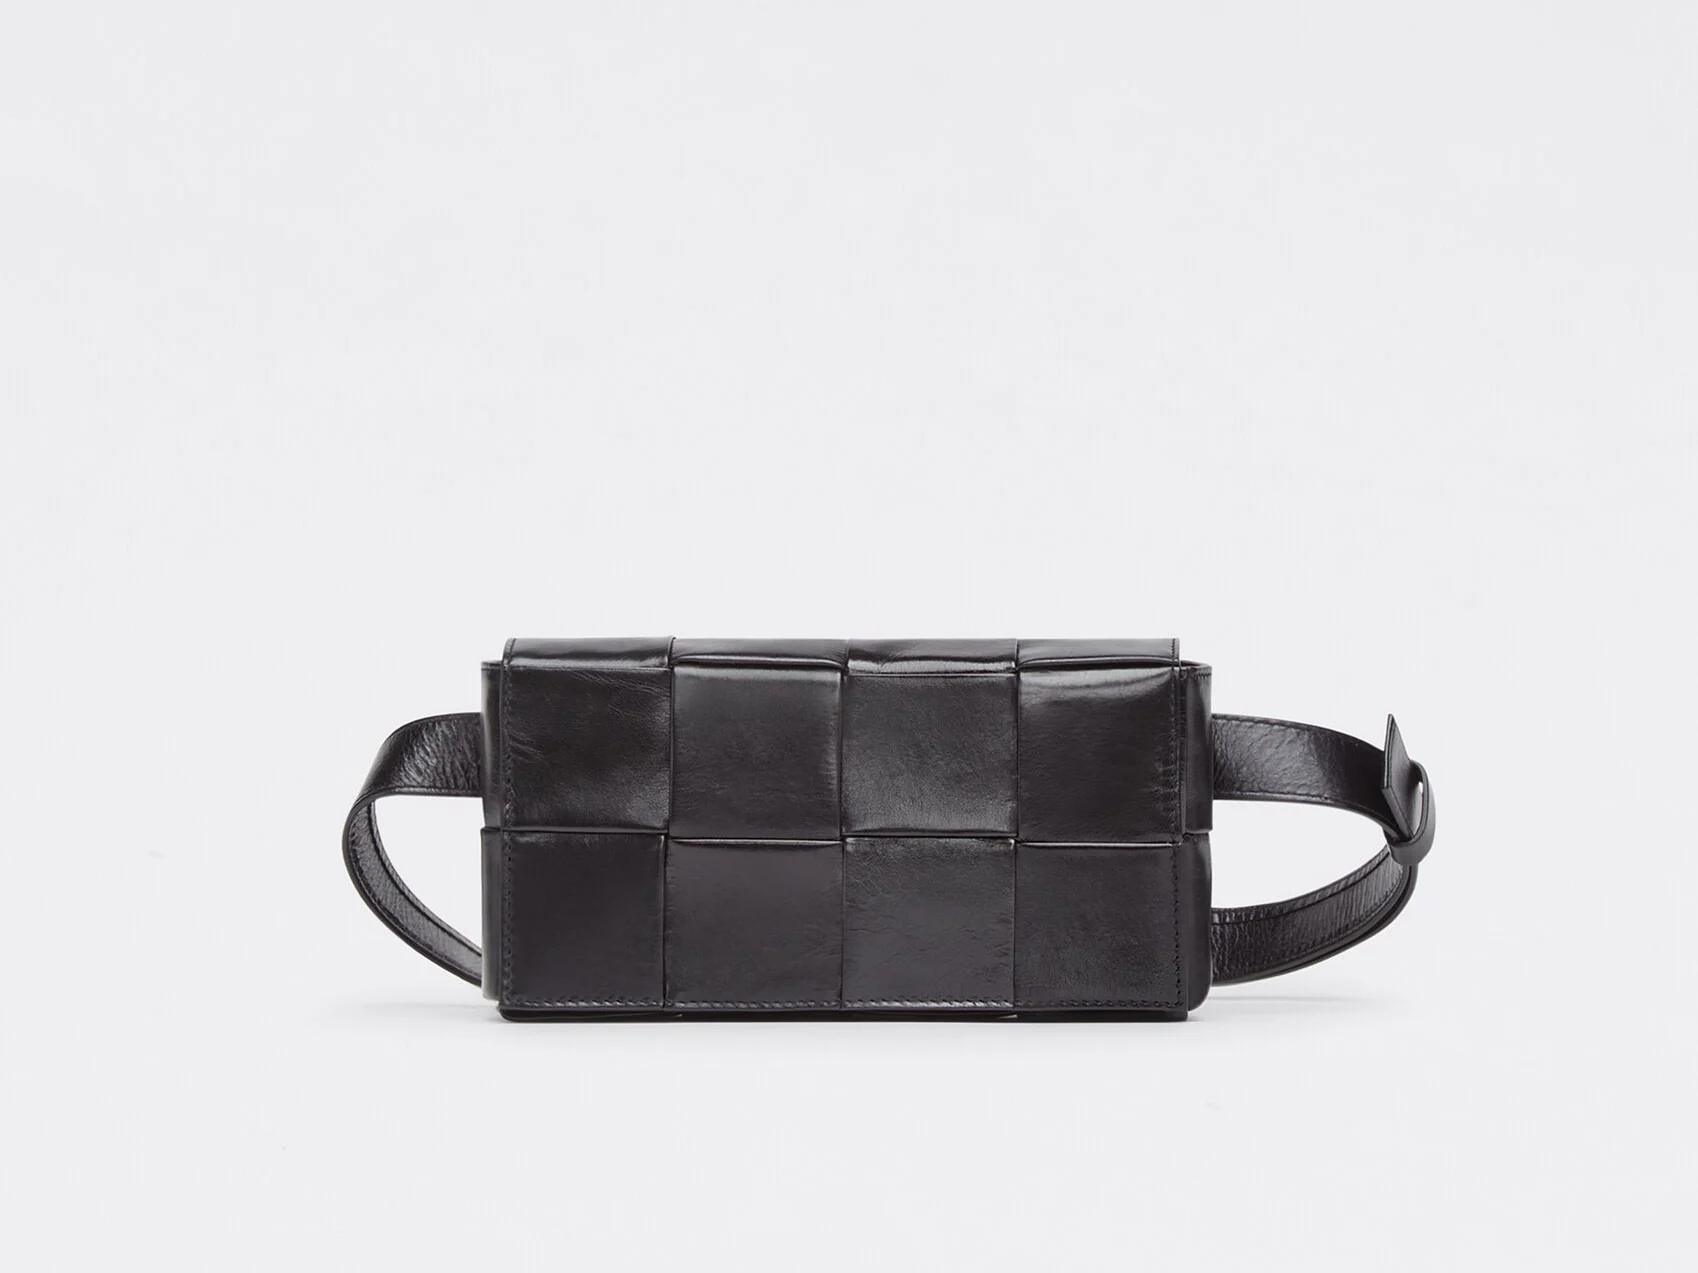 A Belt Cassette in Black. Image: Bottega Veneta